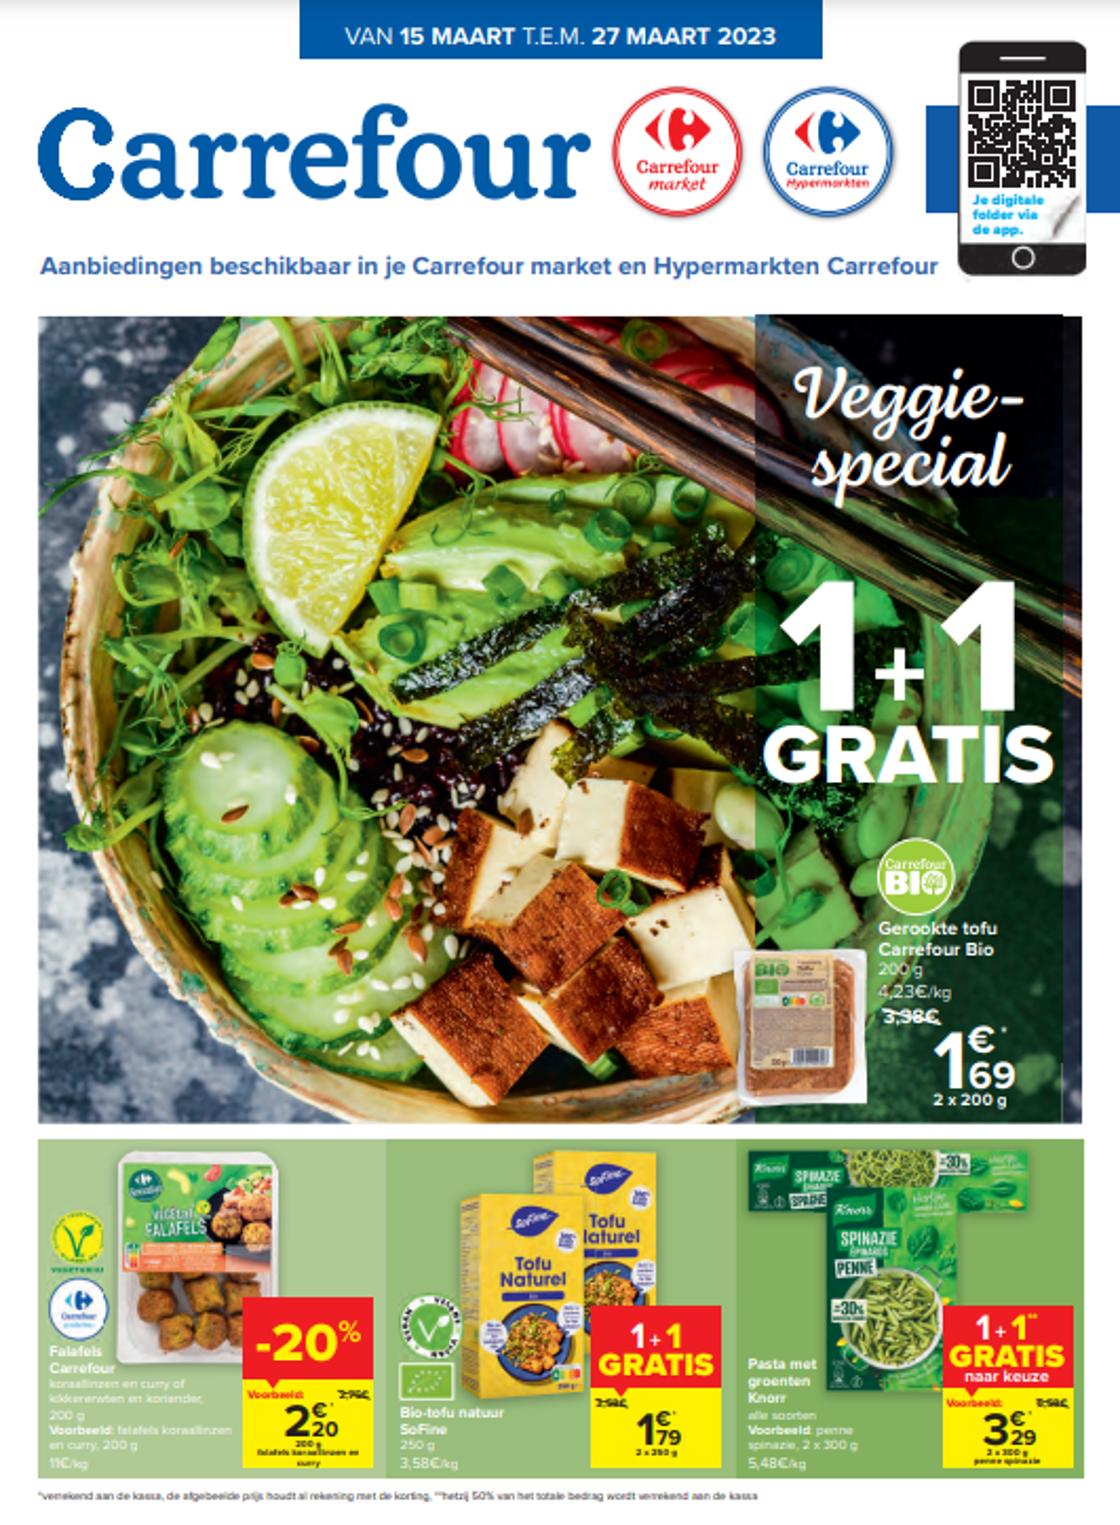 Carrefour versterkt haar betrokkenheid bij de Veggie Challenge